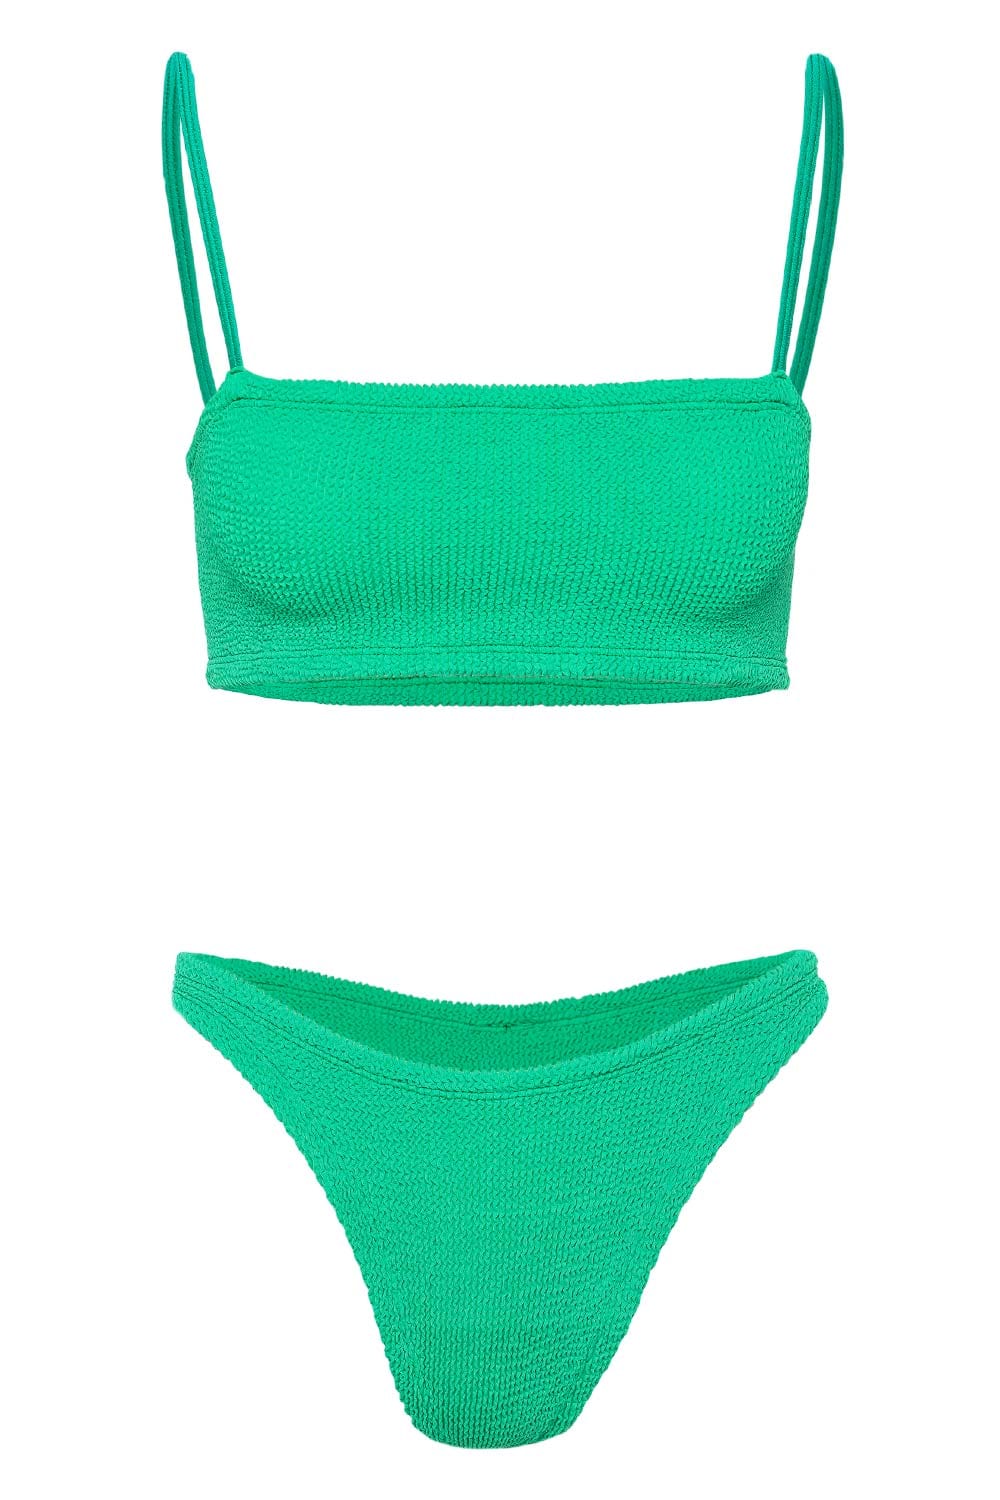 Hunza G Gigi Emerald Crinkle Bikini Set